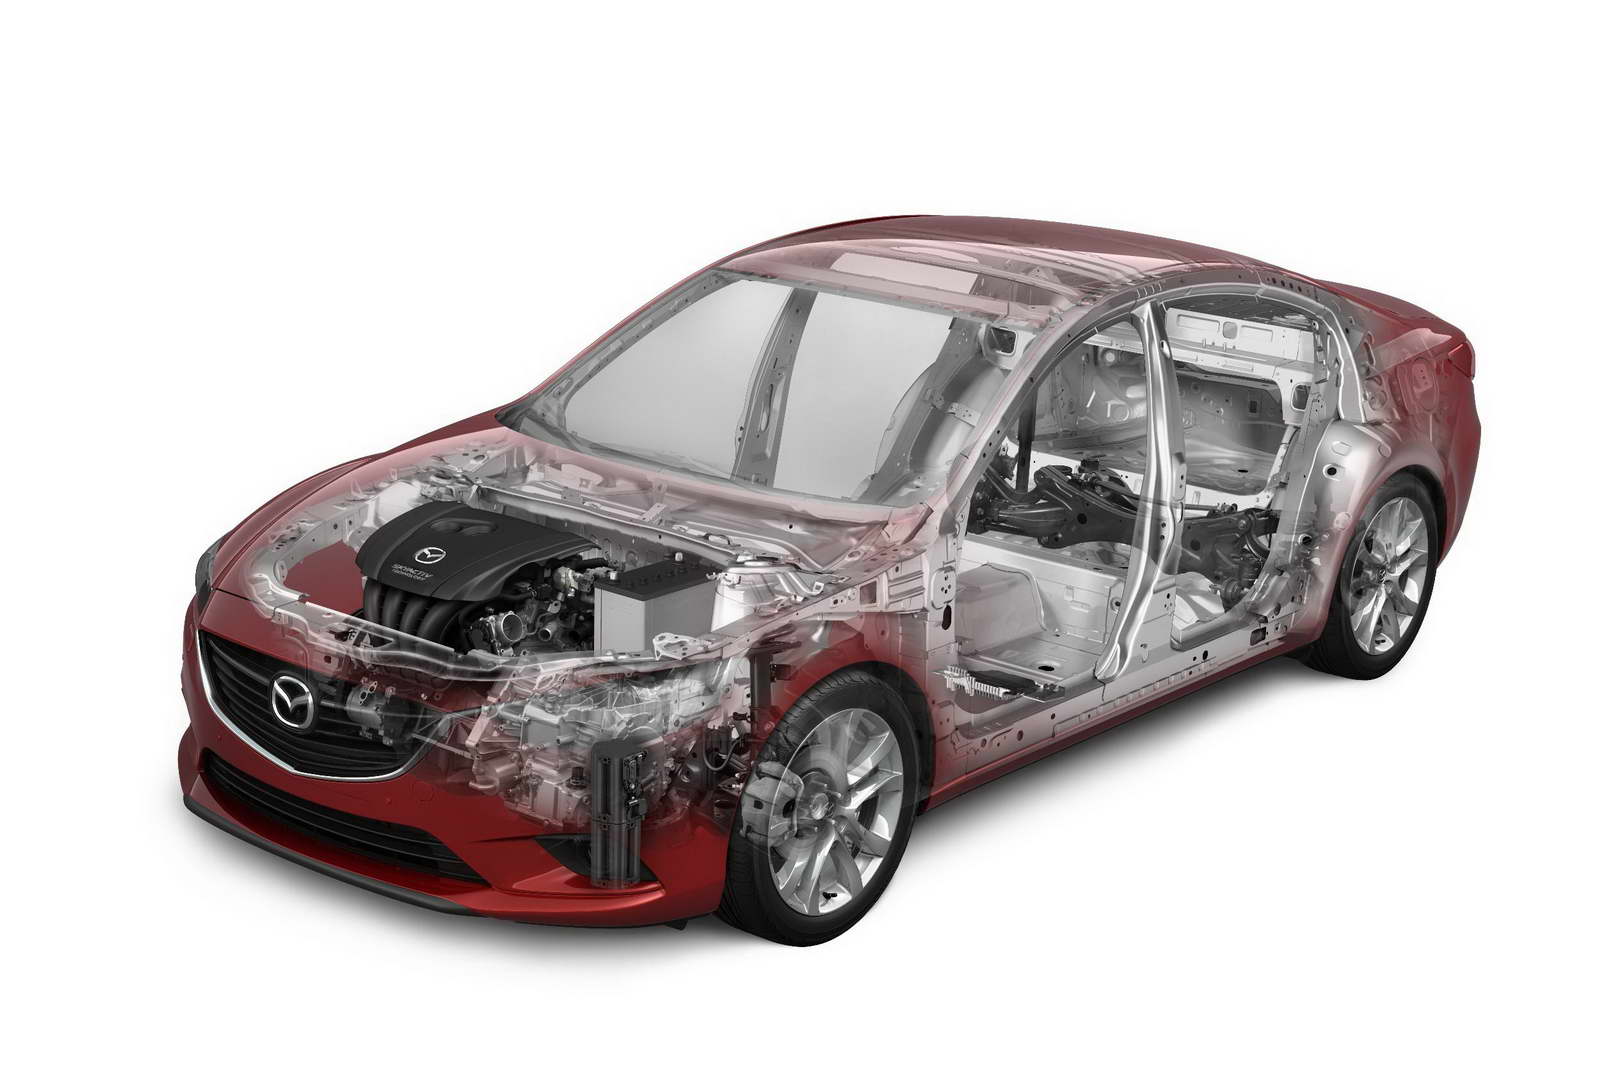 Phiên bản nâng cấp của Mazda 6 sẻ trình làng vào tháng 1.2015